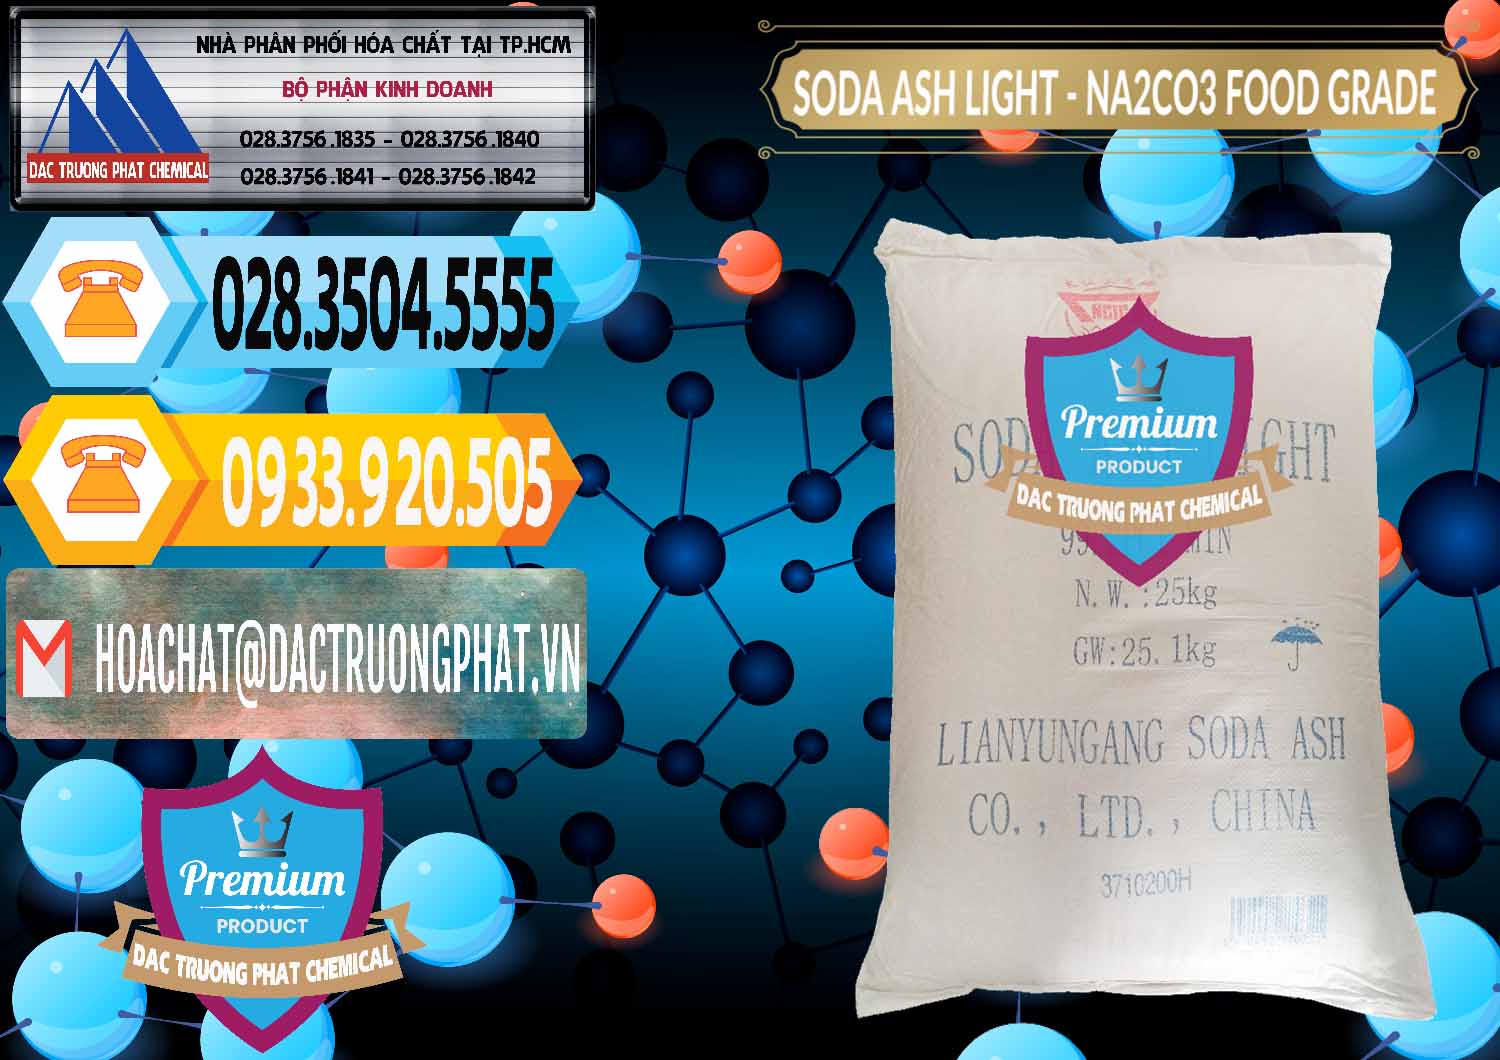 Nơi chuyên kinh doanh và bán Soda Ash Light – NA2CO3 Food Grade Trung Quốc China - 0127 - Cty phân phối ( bán ) hóa chất tại TP.HCM - hoachattayrua.net